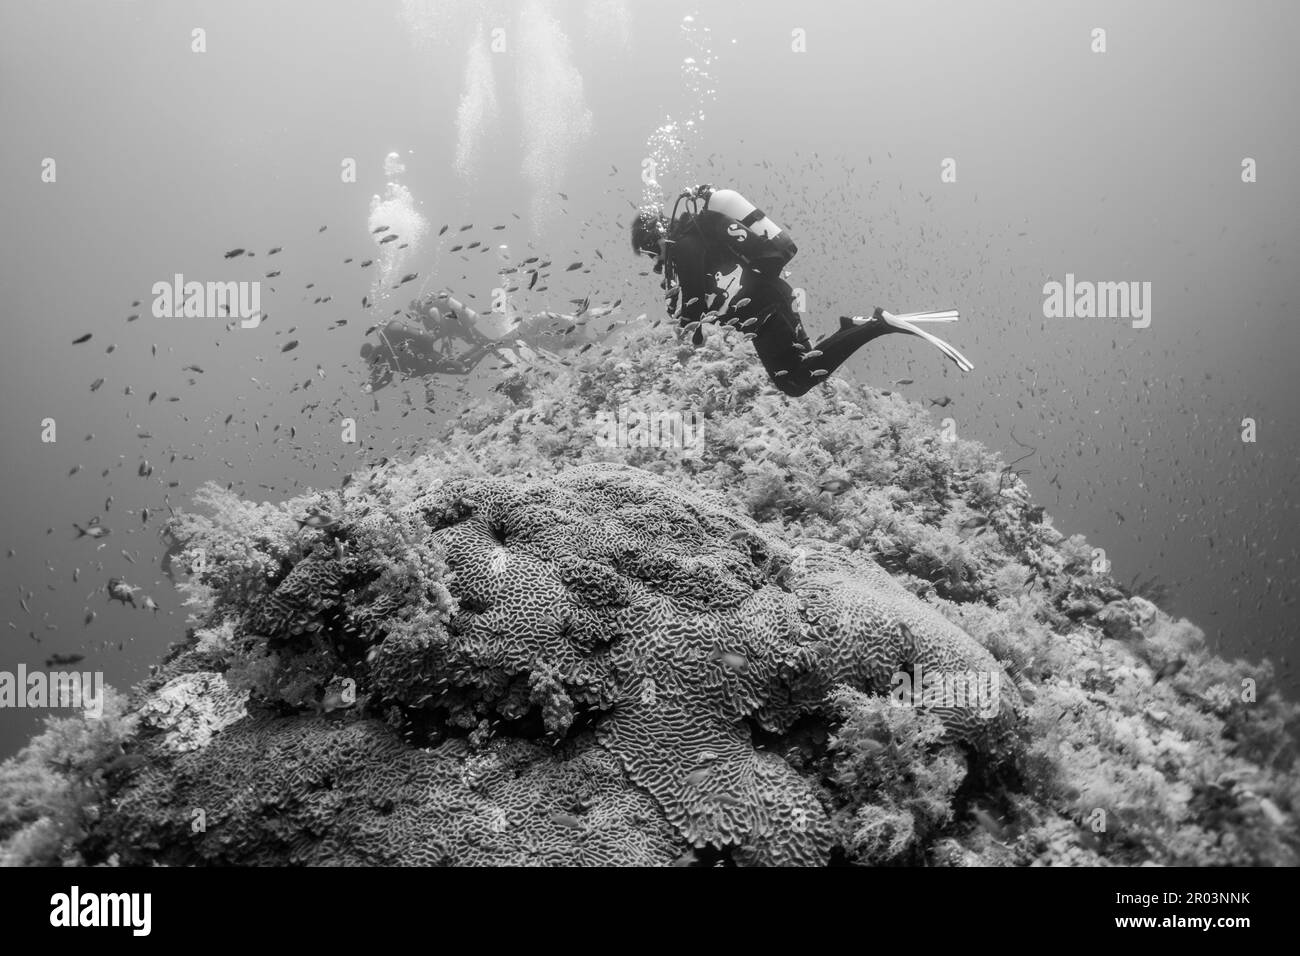 Elphinstone Reef Stock Photo